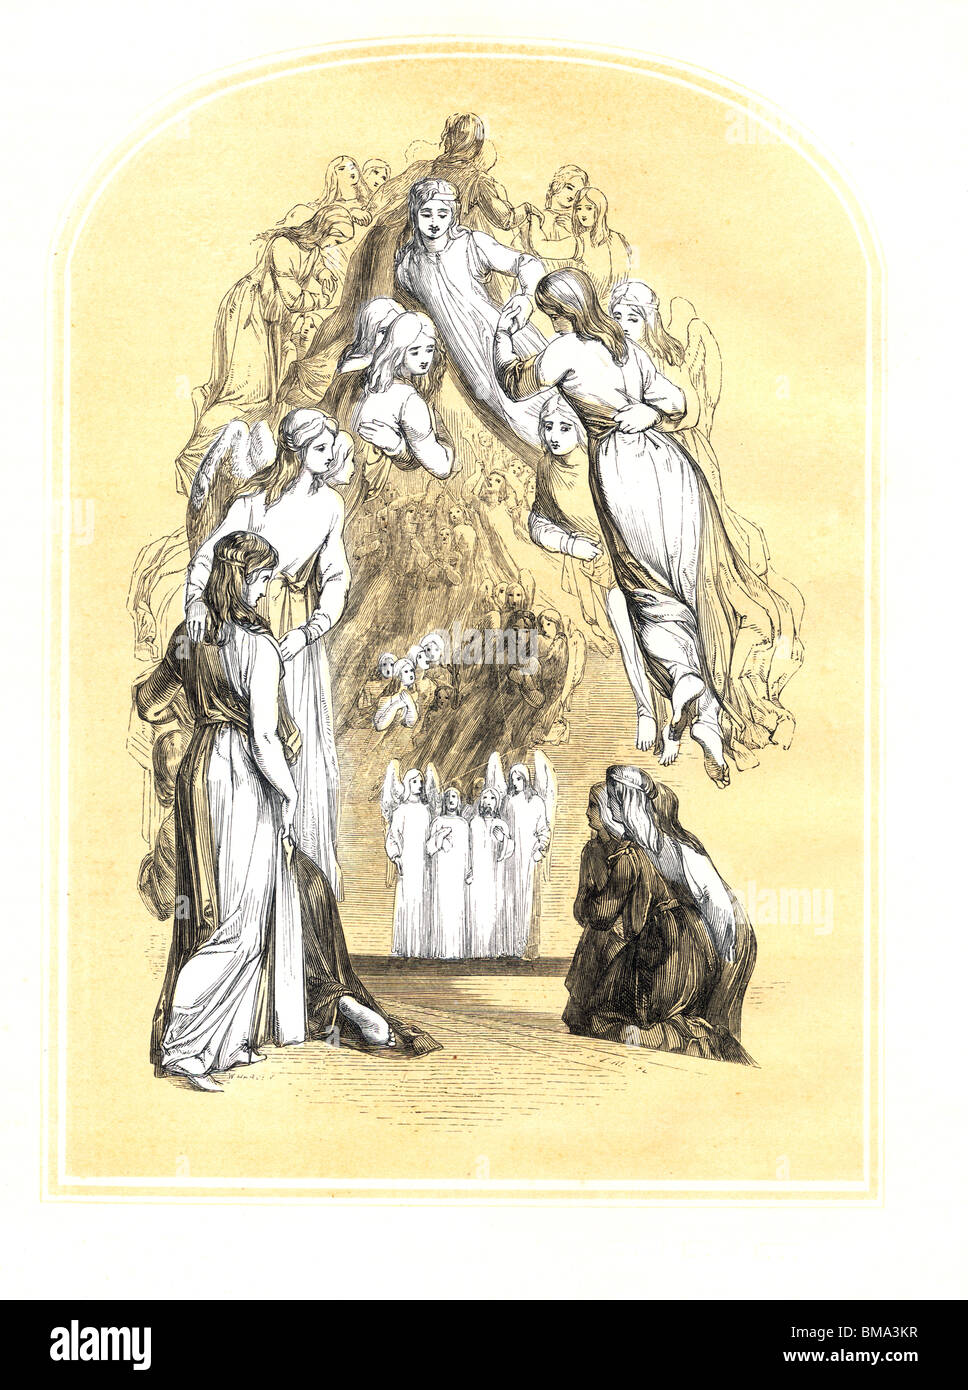 Illustration de John Bunyan's The Pilgrim's Progress ; Pilgrima accueillis par l'Armée céleste ; gravure par Edward Dalziel Banque D'Images